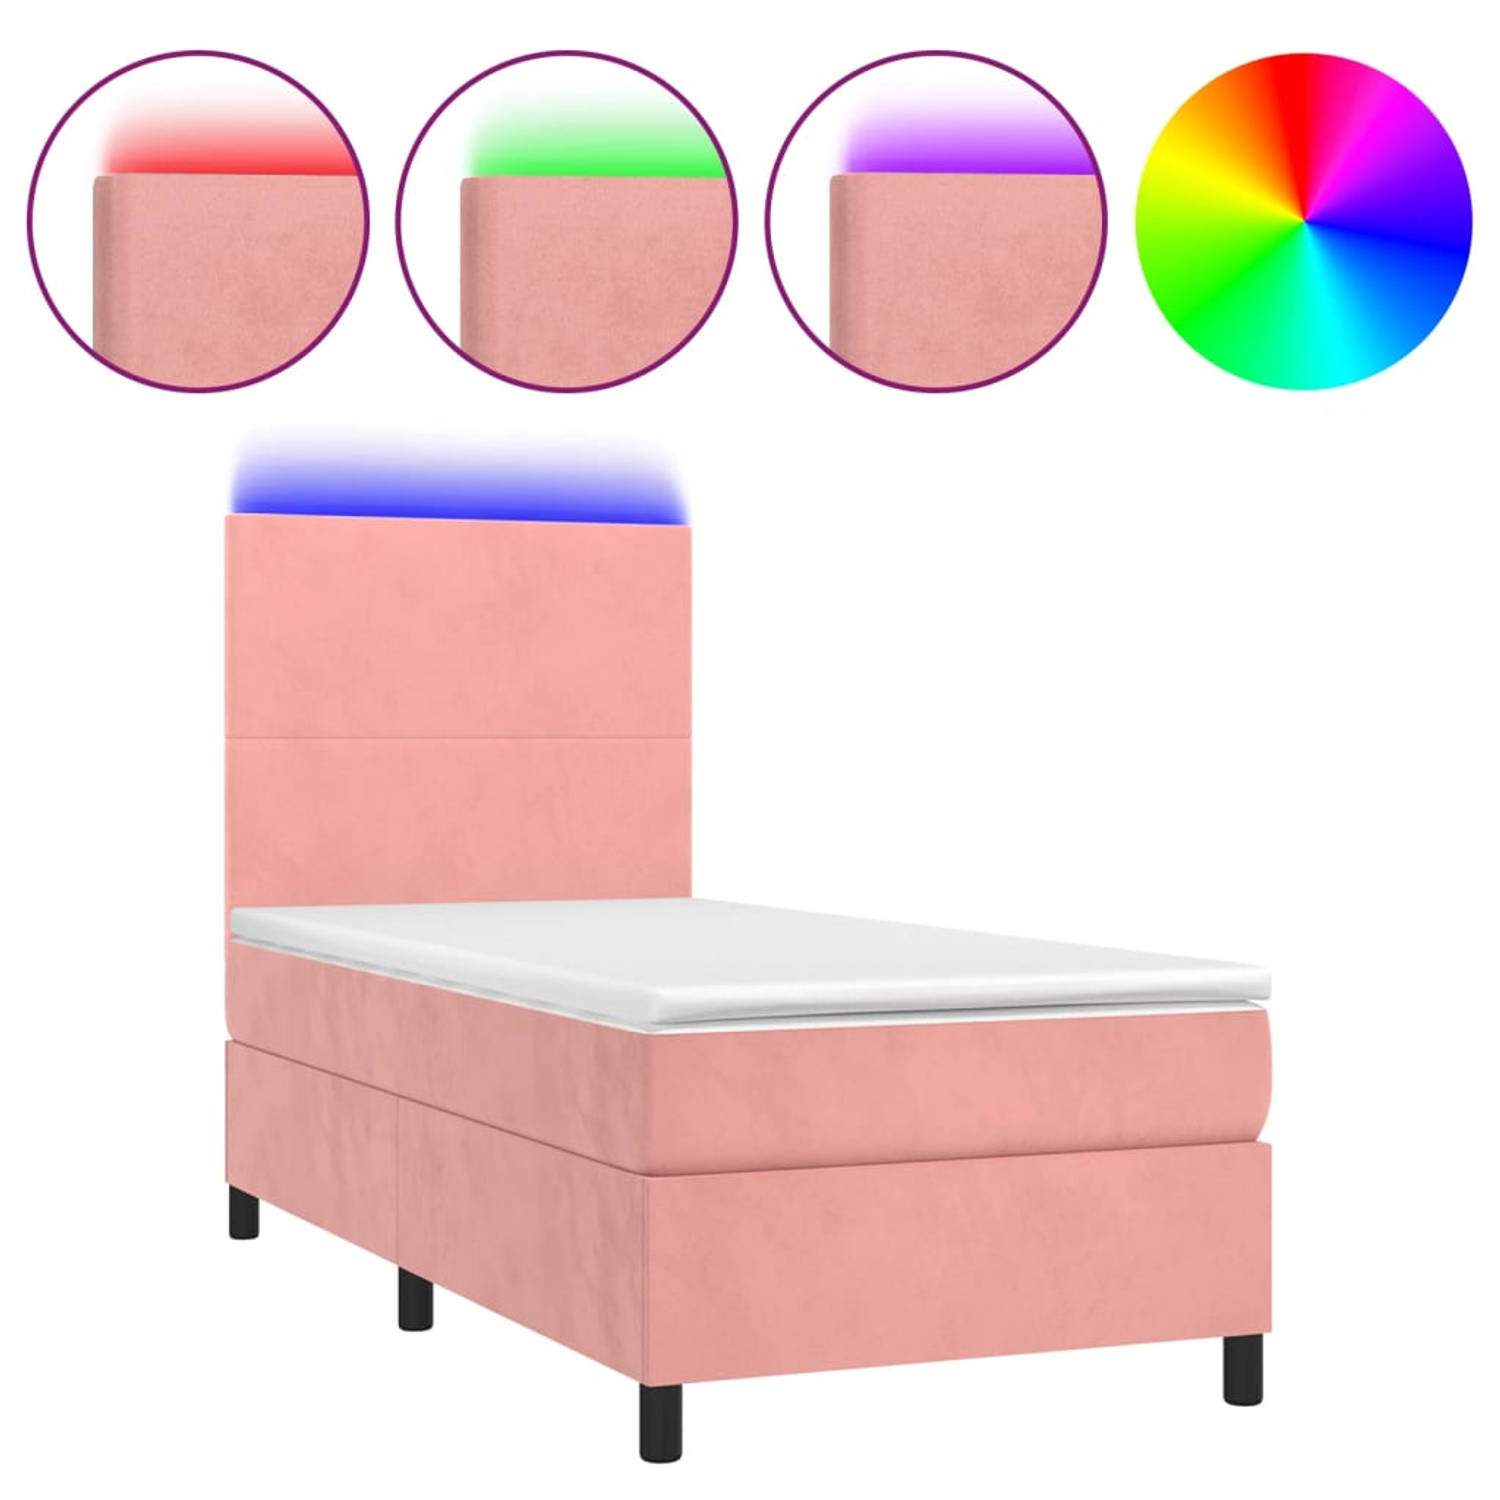 The Living Store Bed Rose Velvet 203x90x118/128cm - Pocketvering matras 90x200x20cm - Bedtopmatras 90x200x5cm - Kleurrijke LED